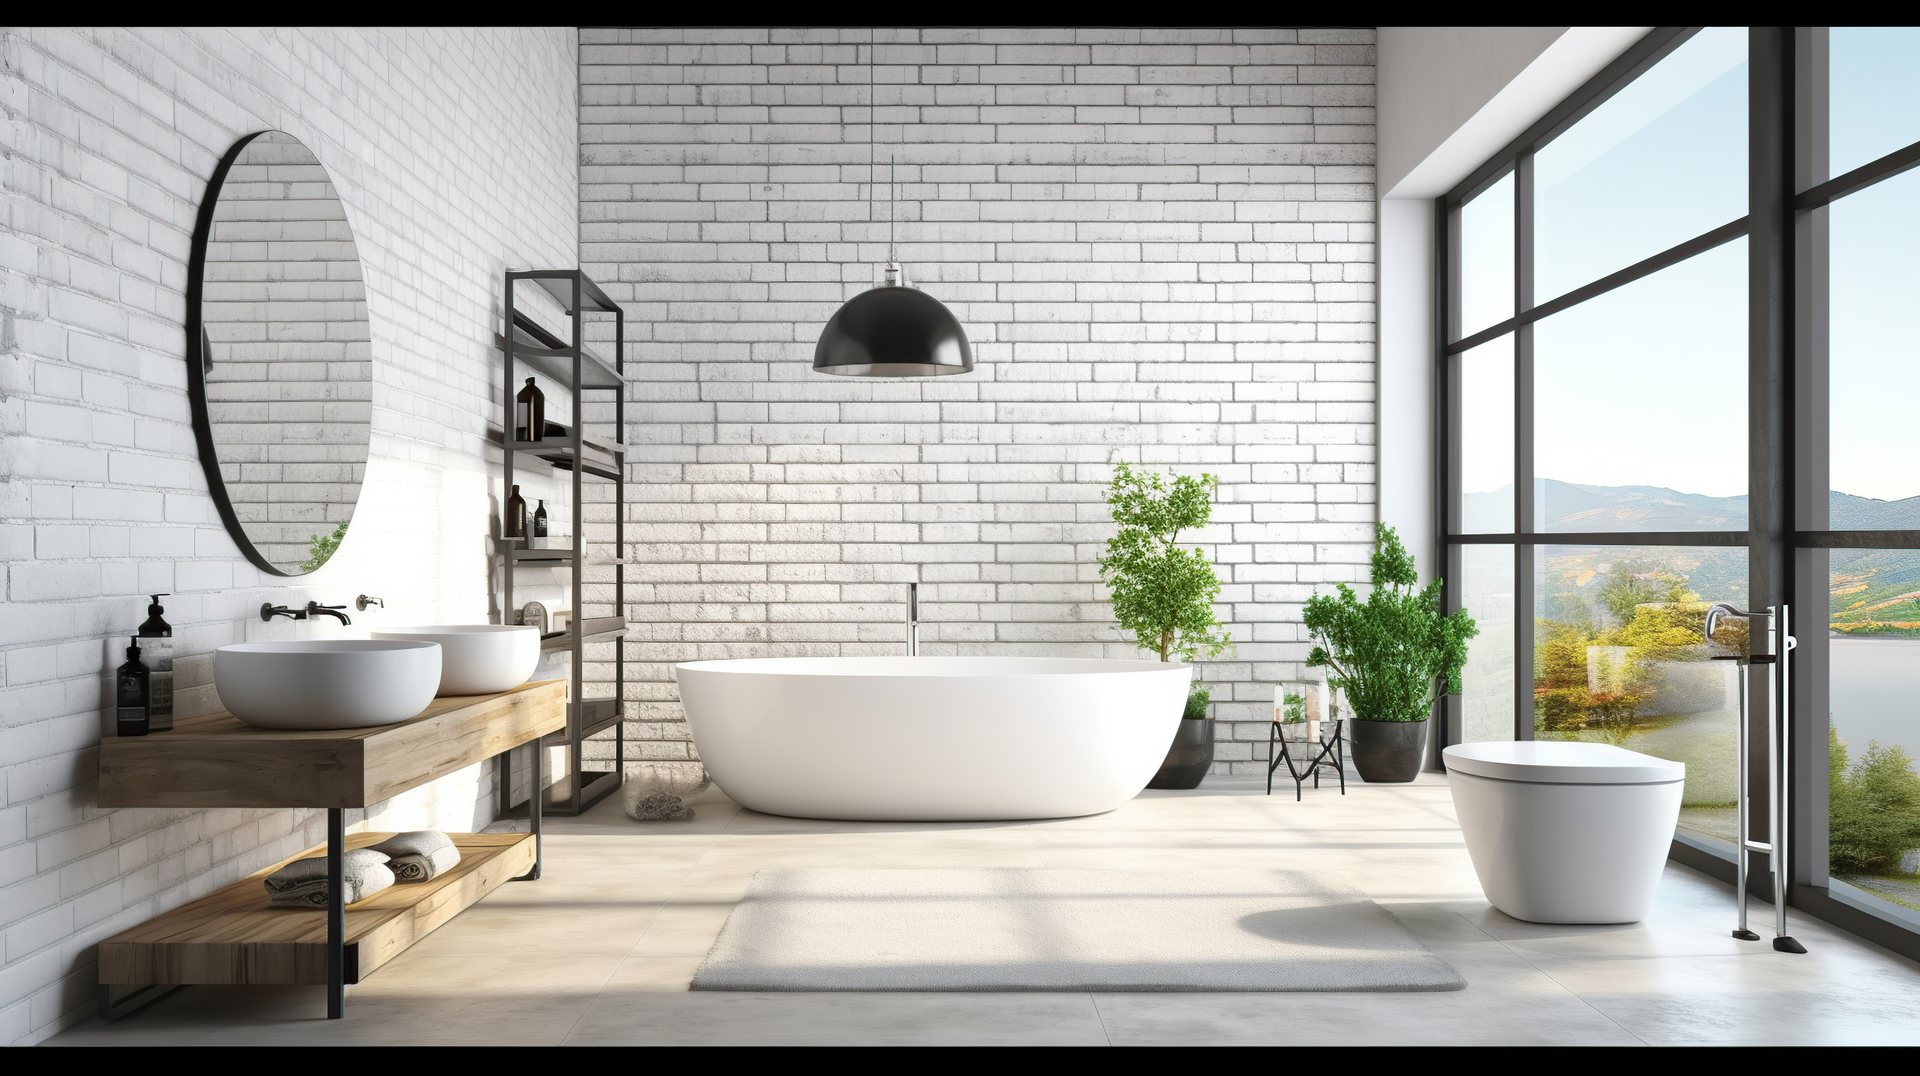 Na tym obrazku widzimy urokliwą łazienkę wykończoną białą cegłą, która dodaje pomieszczeniu wyjątkowego charakteru i industrialnego uroku. Biała cegła na ścianach tworzy interesujący kontrast z eleganckimi elementami wyposażenia, takimi jak biała ceramika i chromowane dodatki. Ta aranżacja nadaje łazience nowoczesny, minimalistyczny styl, jednocześnie tworząc atmosferę przytulności i oryginalności